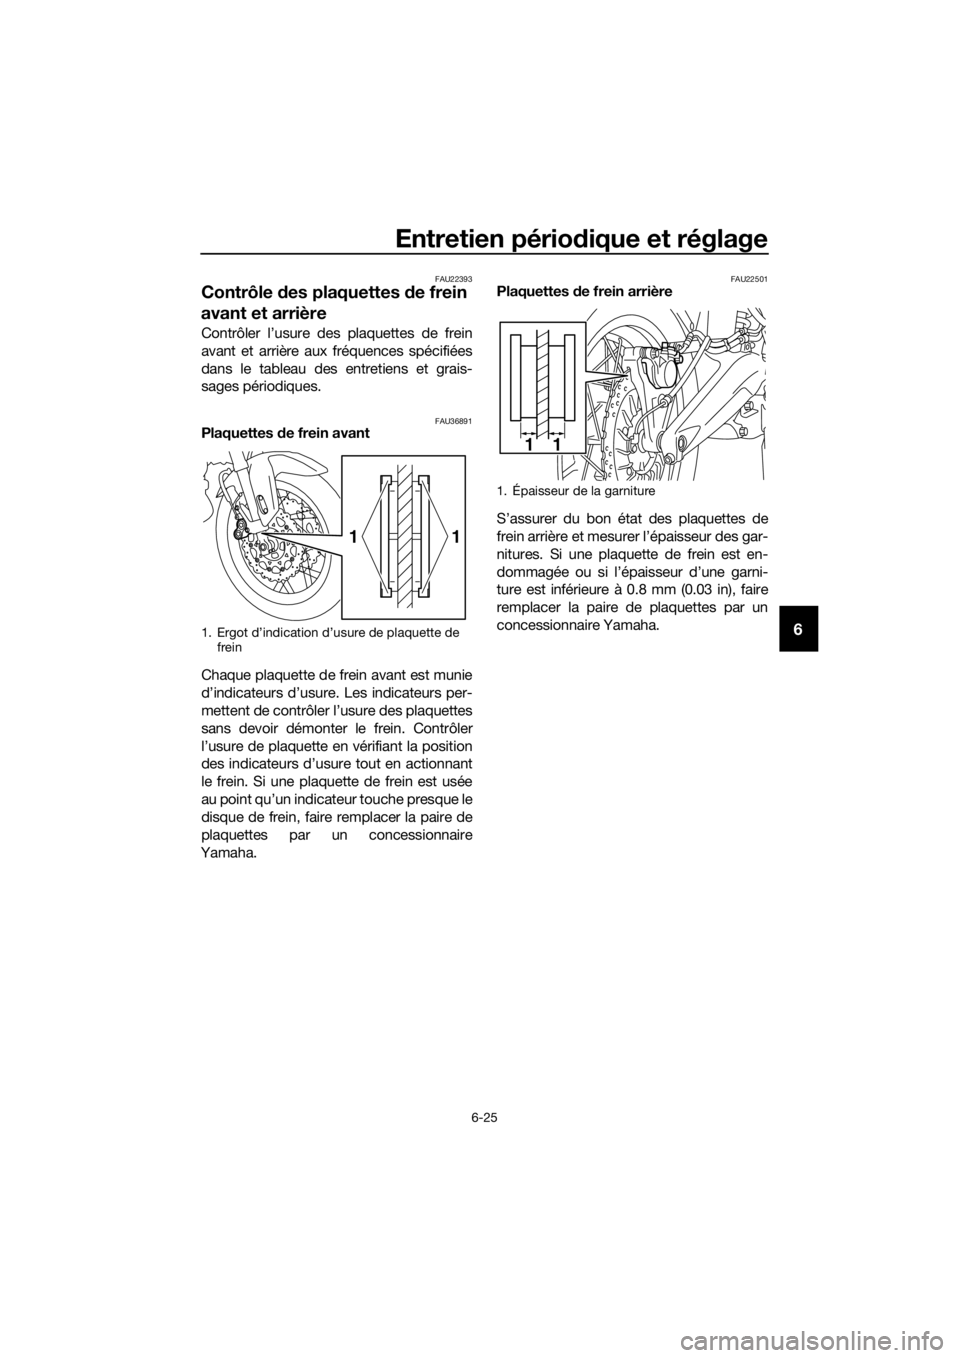 YAMAHA XT1200ZE 2019  Notices Demploi (in French) Entretien périodique et réglage
6-25
6
FAU22393
Contrôle des plaquettes  de frein 
avant et arrière
Contrôler l’usure des plaquettes de frein
avant et arrière aux fréquences spécifiées
dans